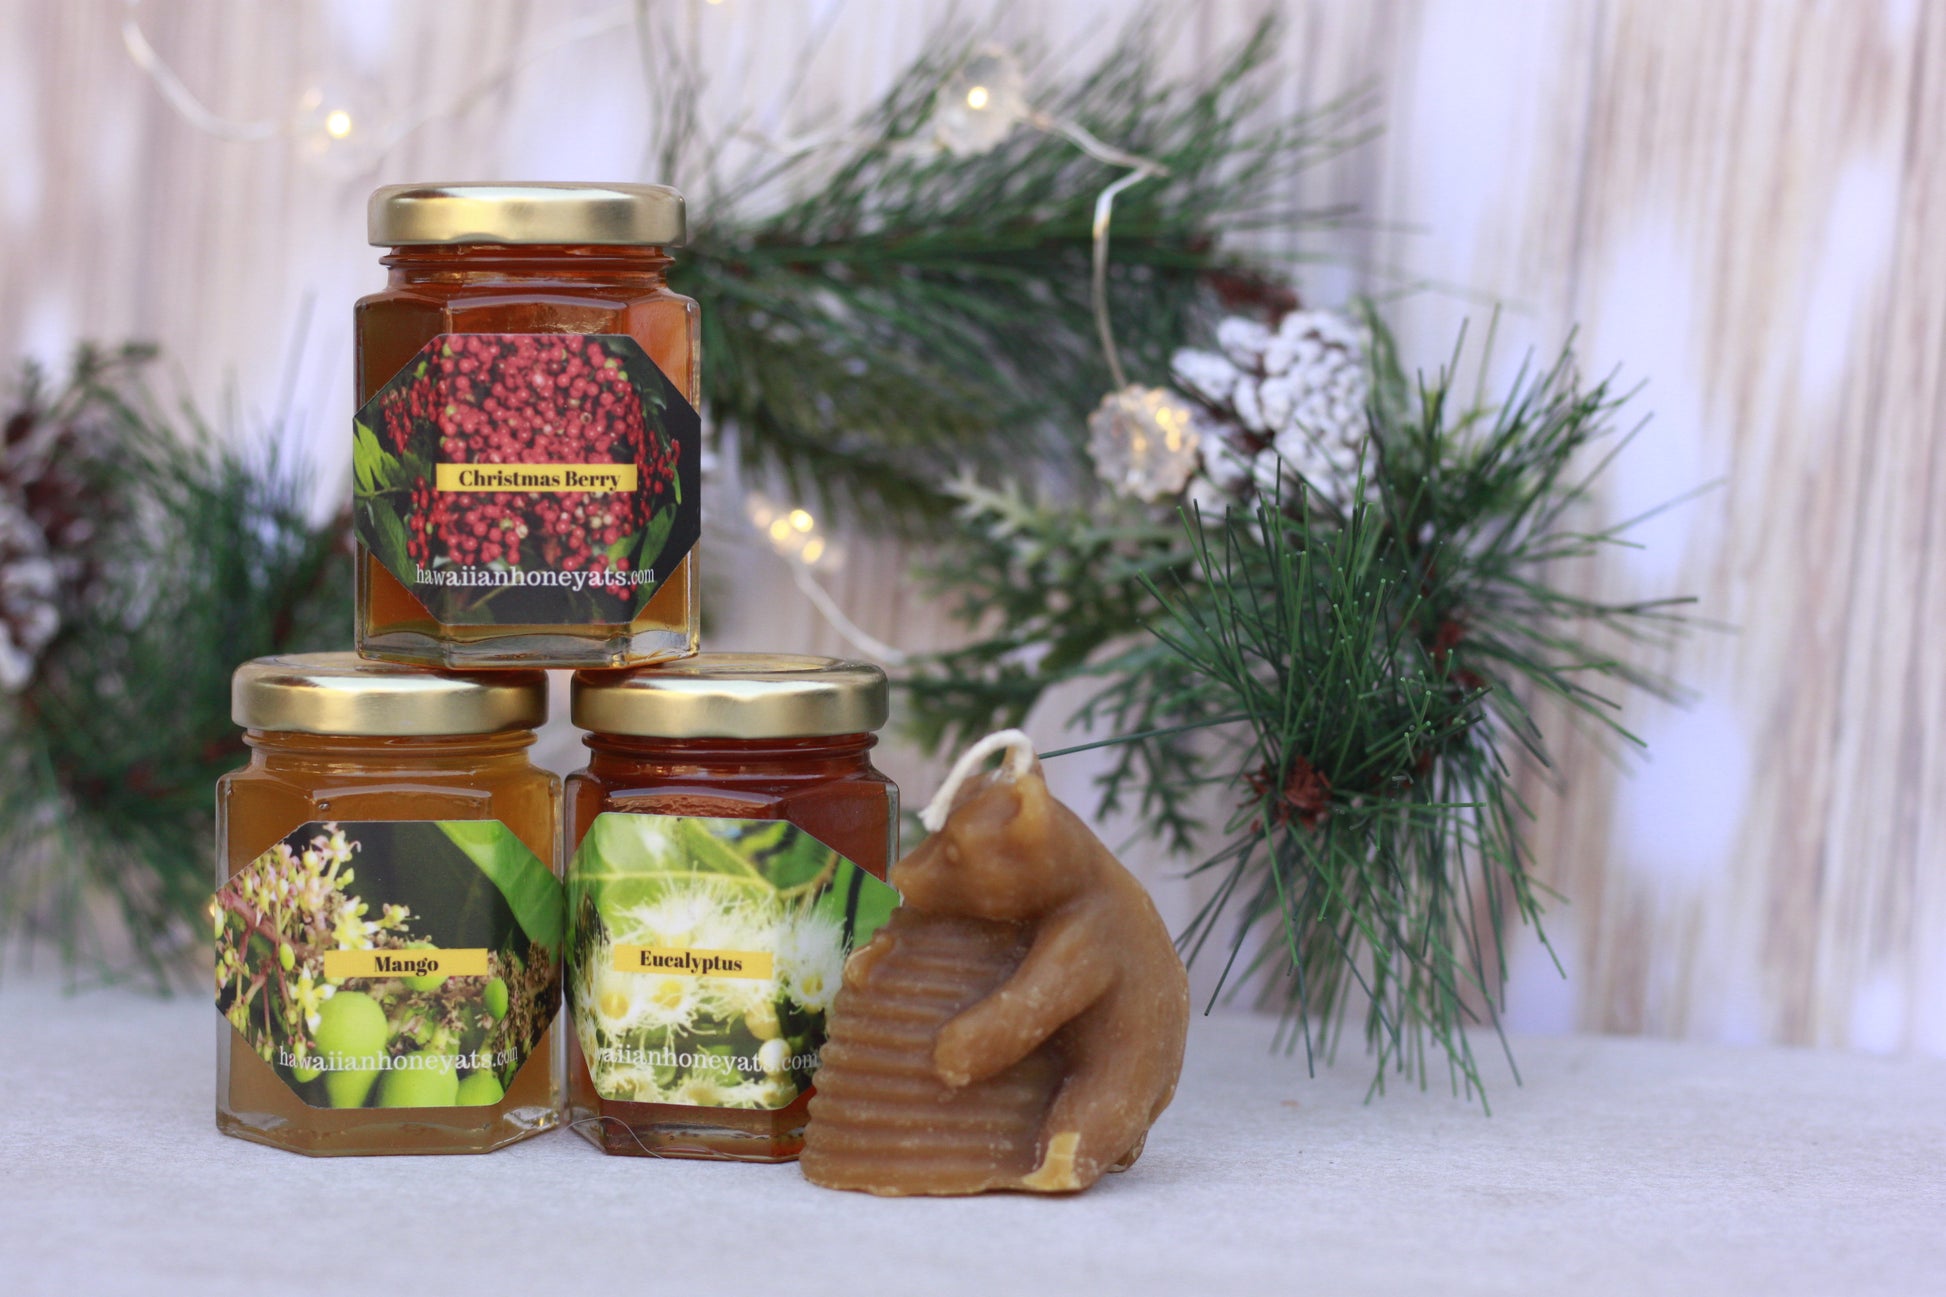 Gift Sets - Hawaiian Honey AT&S